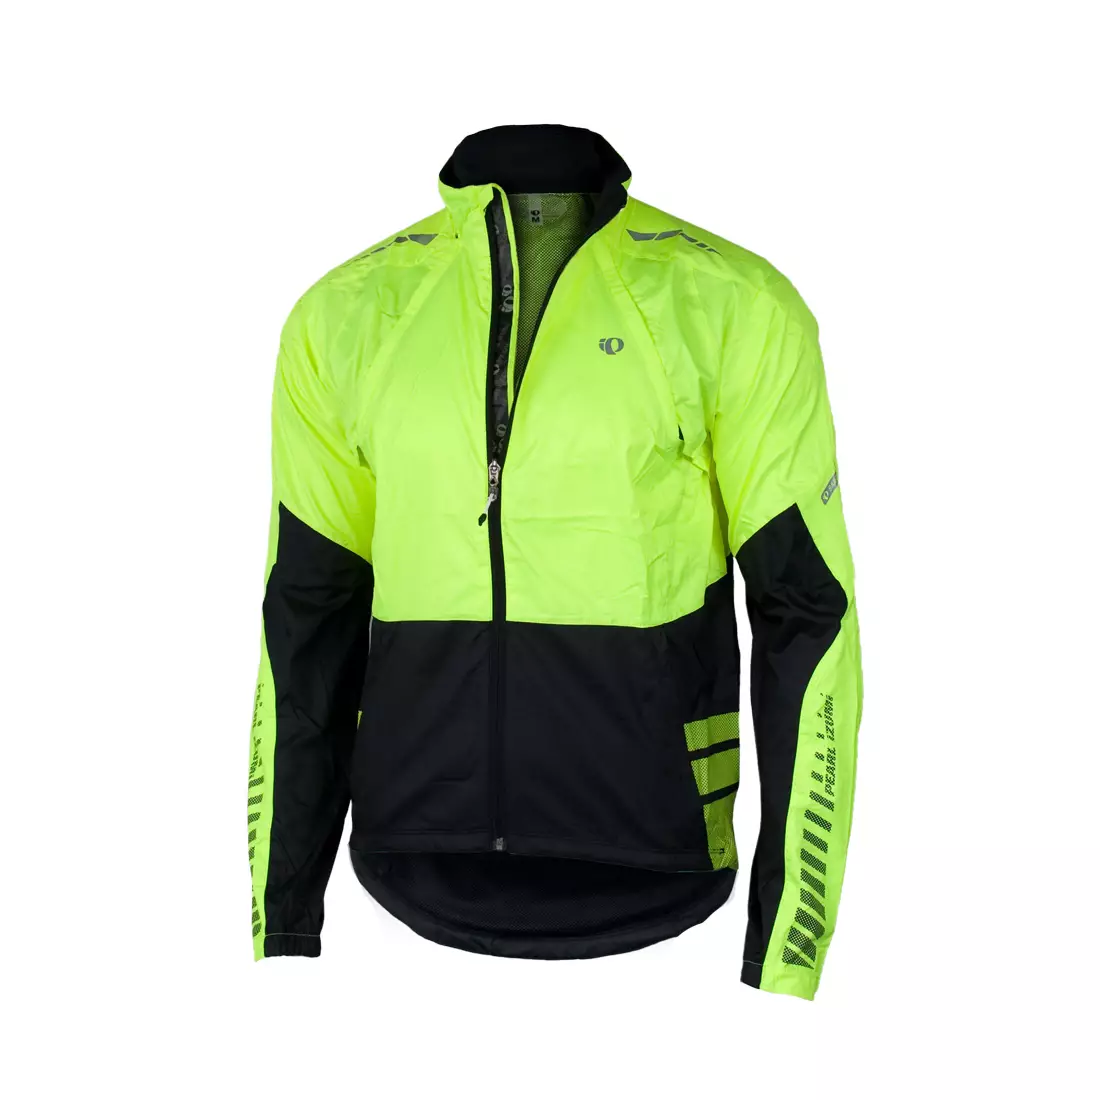 PEARL IZUMI - ELITE Barrier Convertible Jacket 11131314-429 - kerékpáros kabát-mellény, szín: Fluoro-fekete